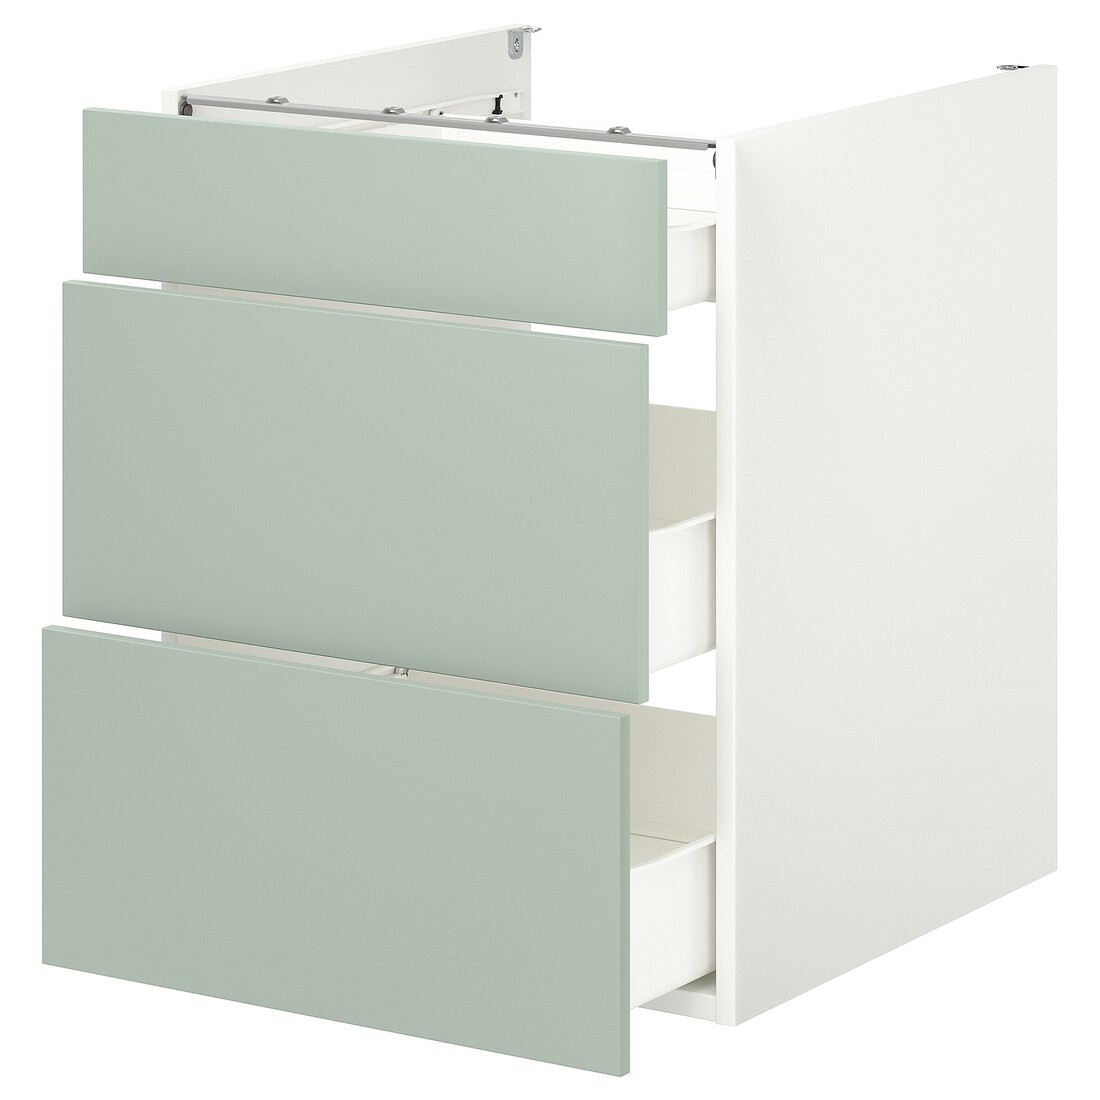 IKEA ENHET ЭНХЕТ Напольный шкаф с 3 ящиками, белый / бледный серо-зеленый, 60x62x75 см 79496781 794.967.81